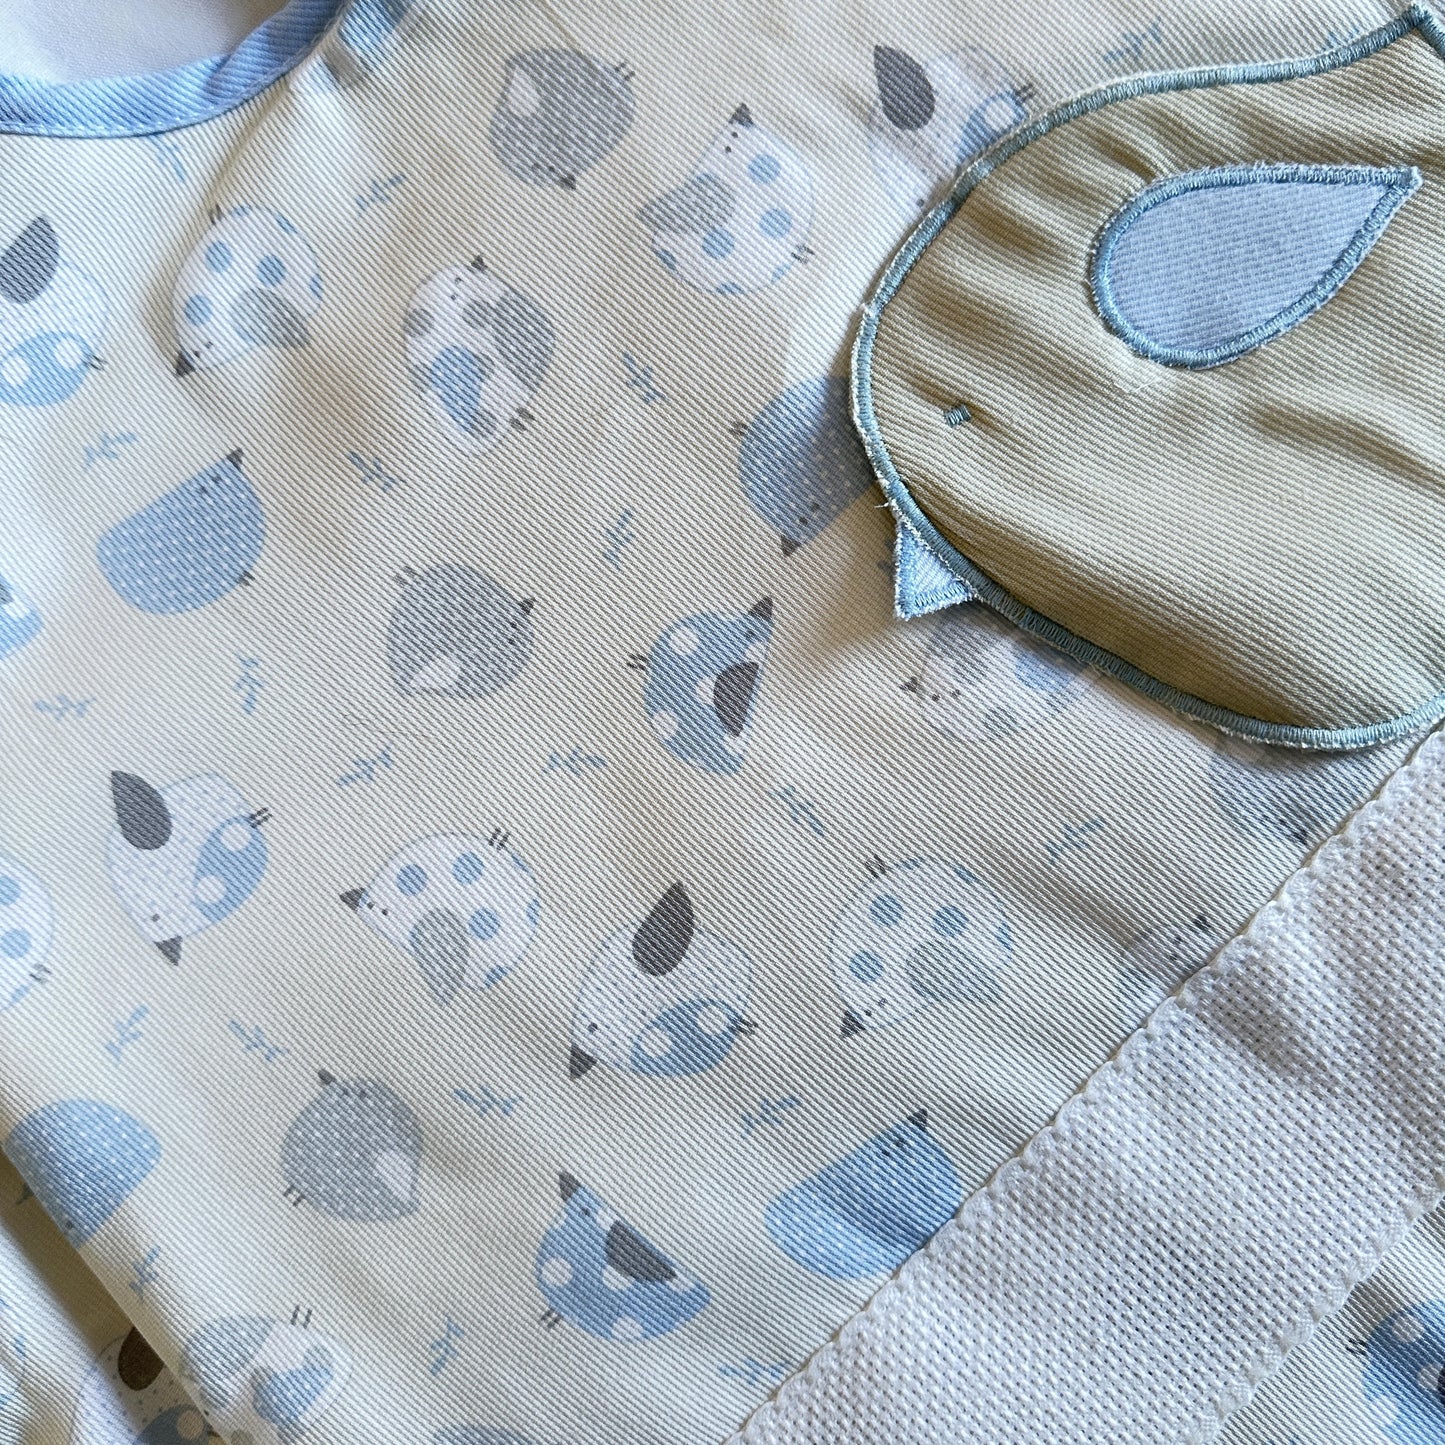 Saco de dormir para bebés con cinta de bordado en punto de cruz, personalizable, con estampado de pajaritos.